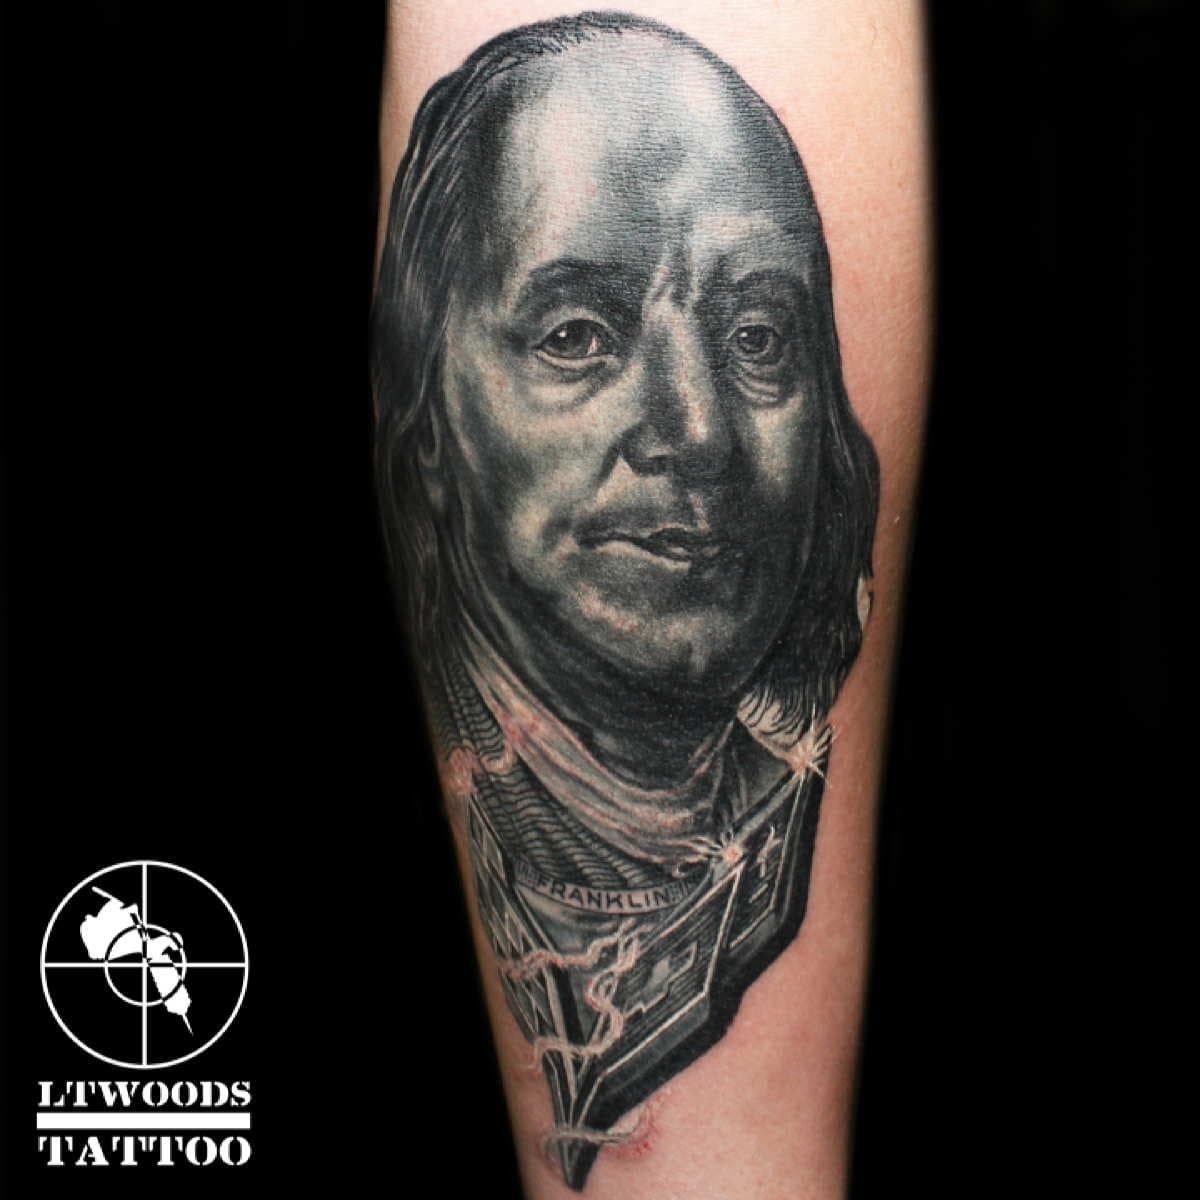 Forefather by Jeff Saunders Ben Franklin  Key Tattoo Canvas Art Print   Pattern tattoo Art prints Key tattoo